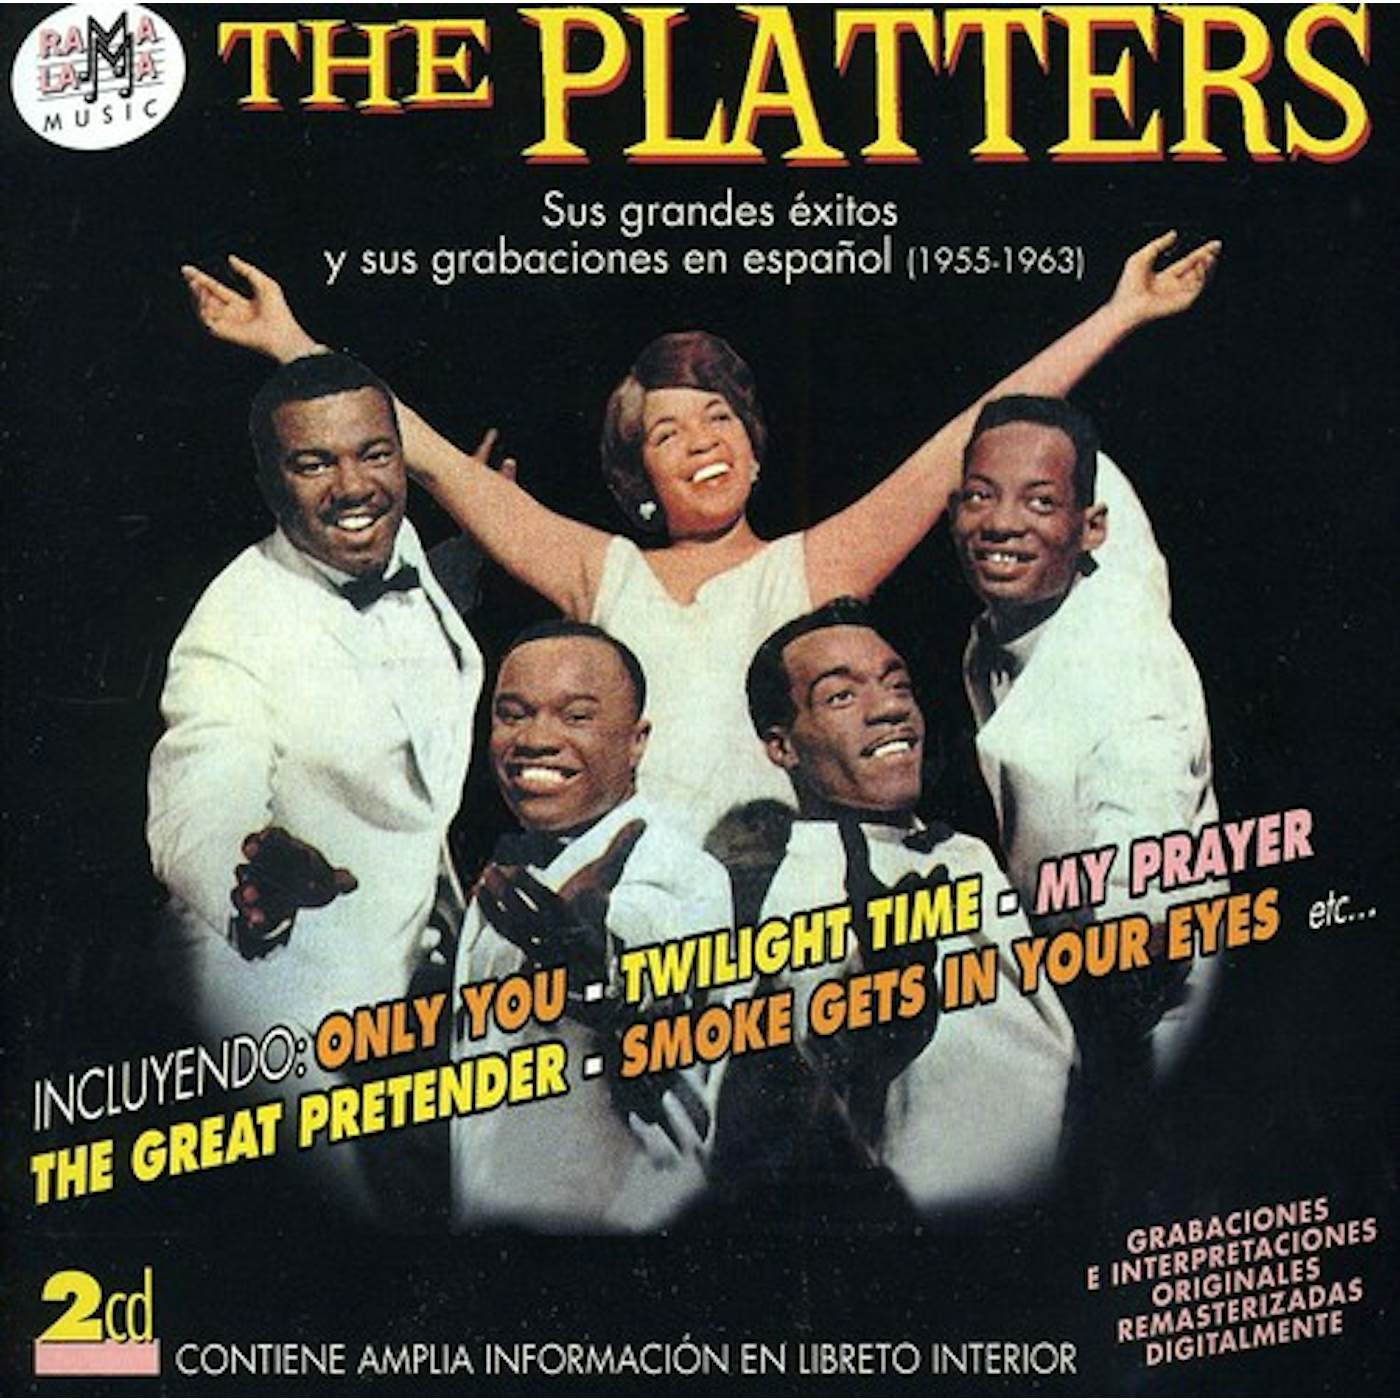 The Platters SUS GRANDES EXITOS Y SUS GRABACIONES EN ESPANOL CD